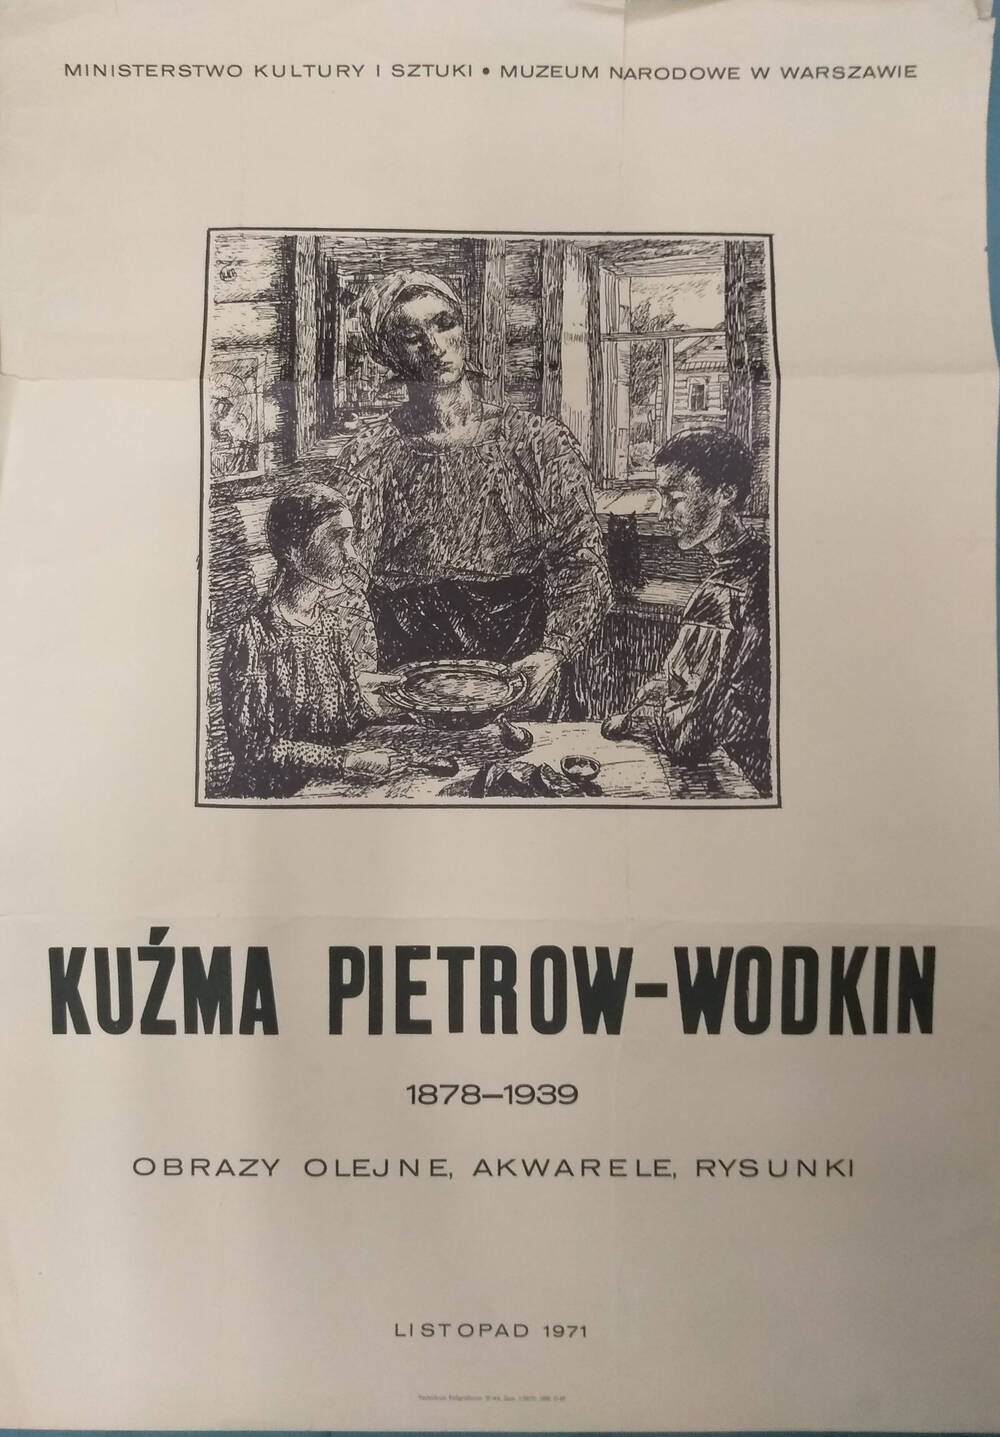 Афиша выставки произведений К.С. Петрова-Водкина в Варшаве осенью 1971 г.